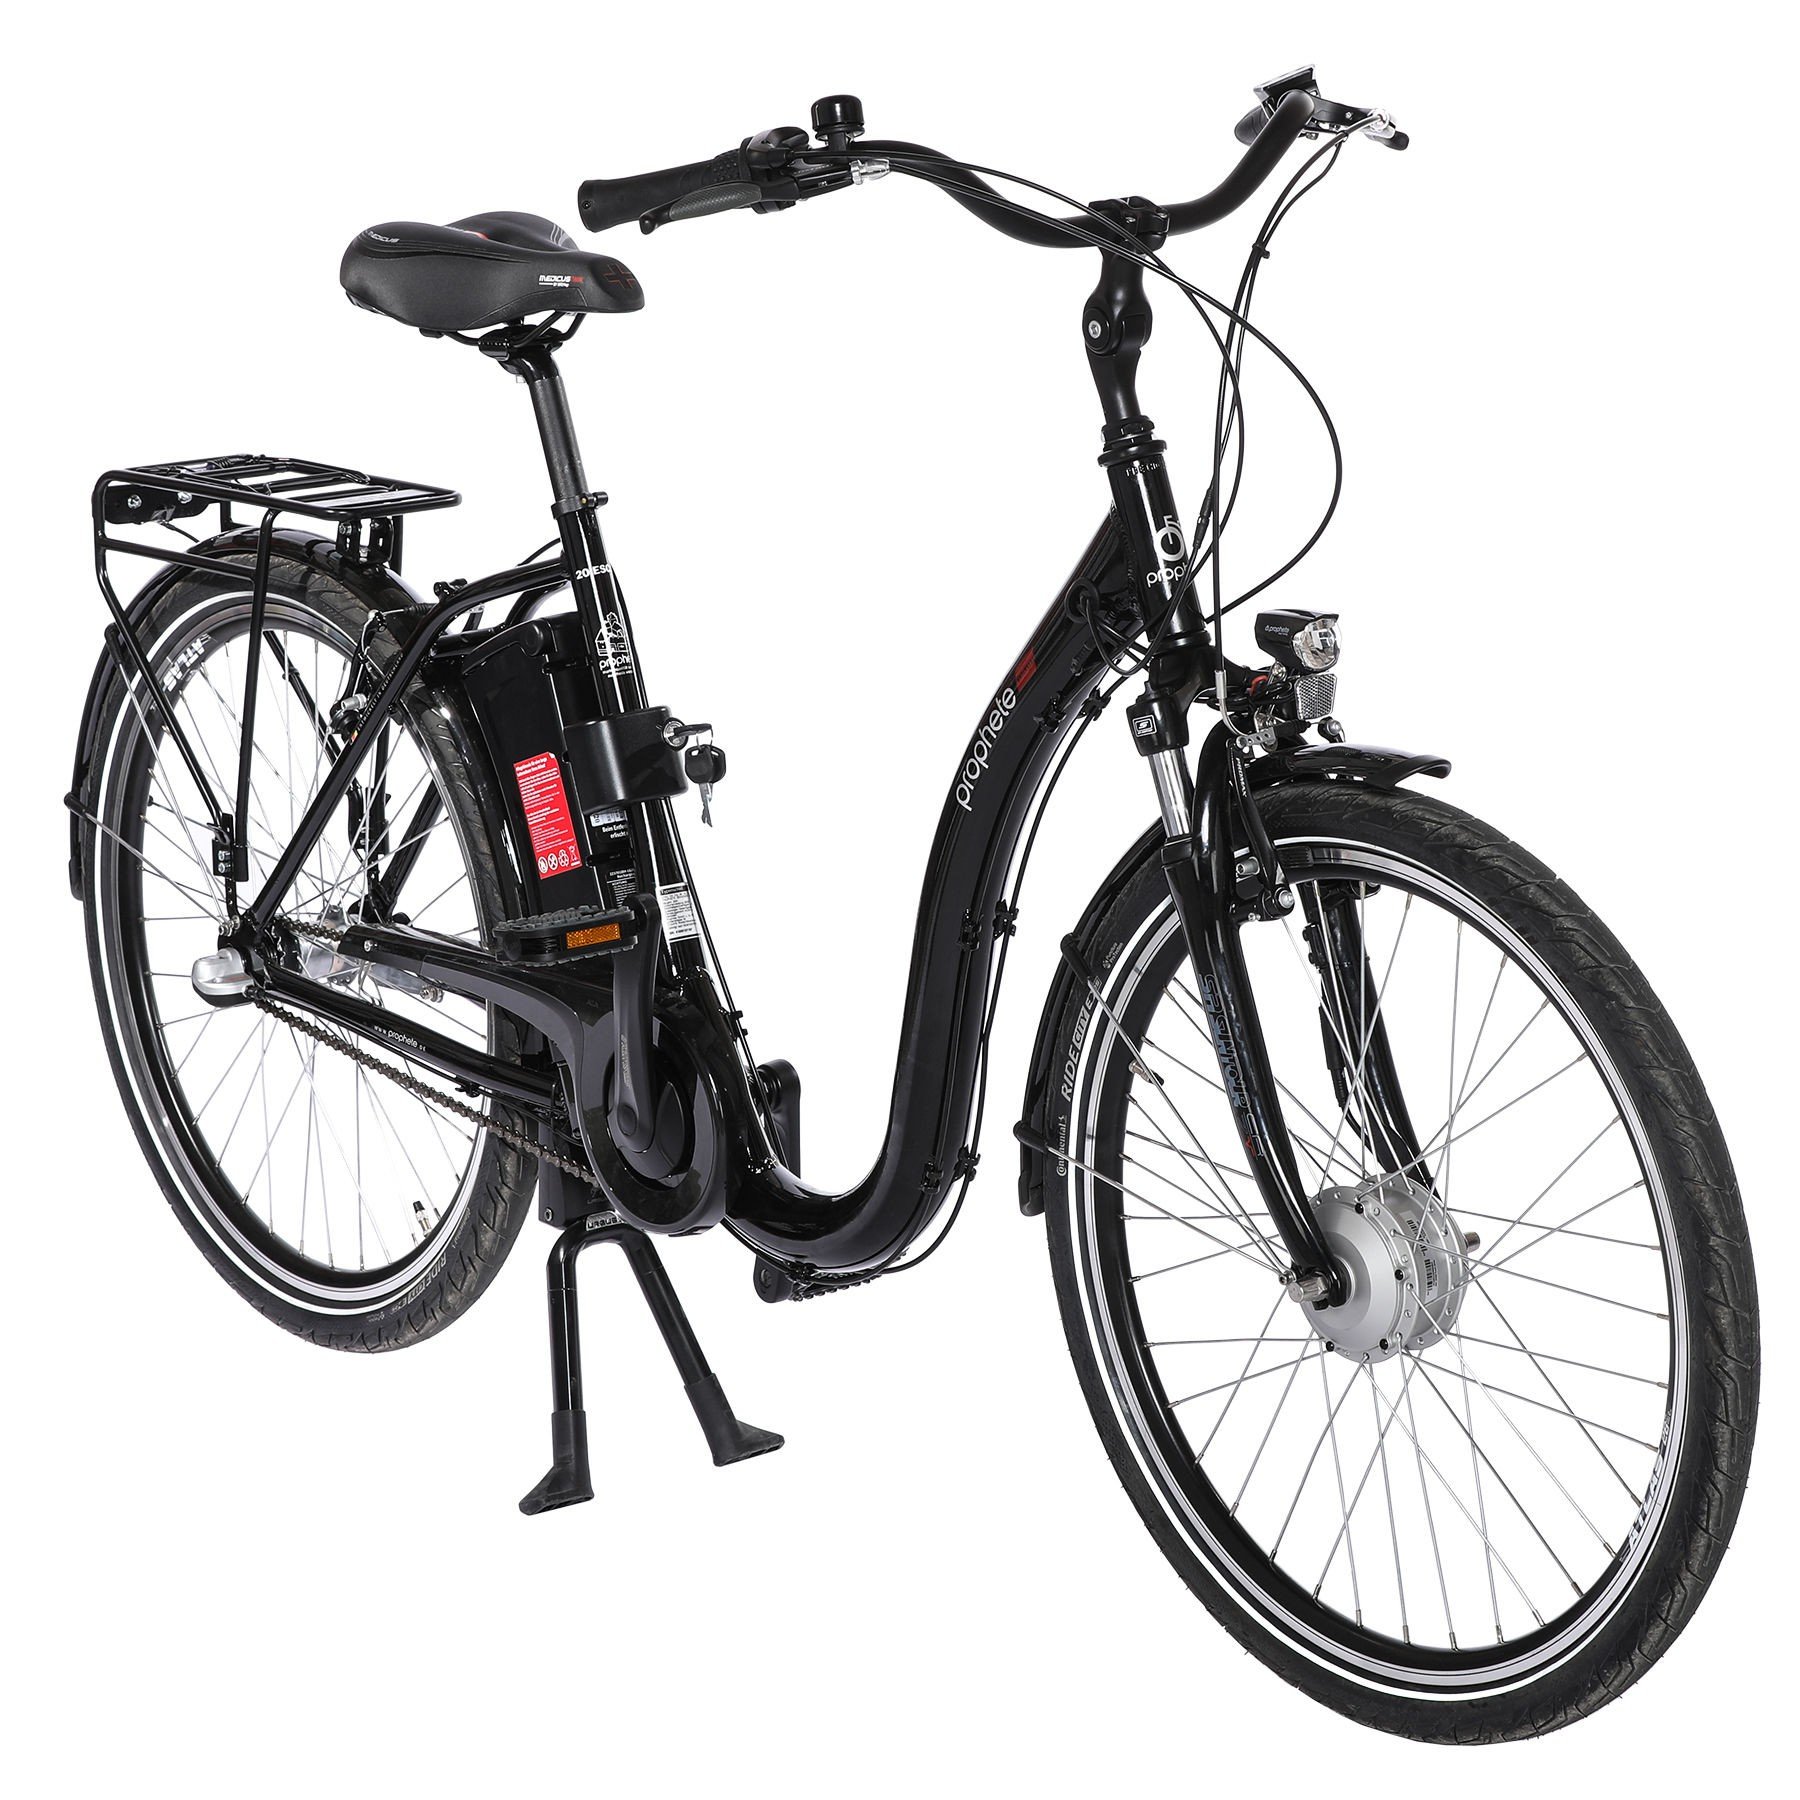 PROPHETE Centrum City E-Bike 26" BLAUPUNKT Motor - Elektro Fahrrad -  Mobilität der Zukunft - Marken